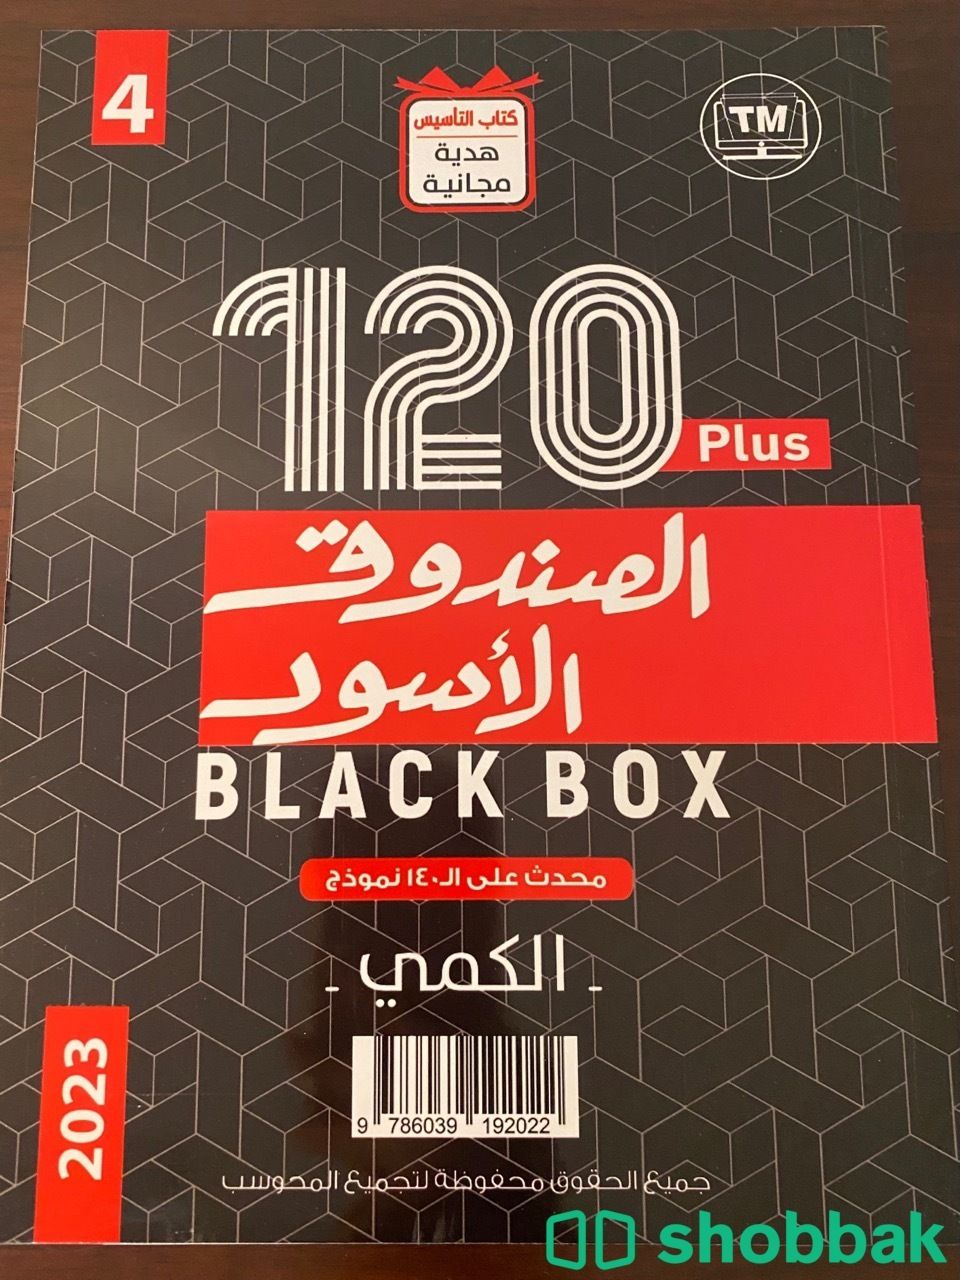 كتب الصندوق الأسود قدرات  Shobbak Saudi Arabia